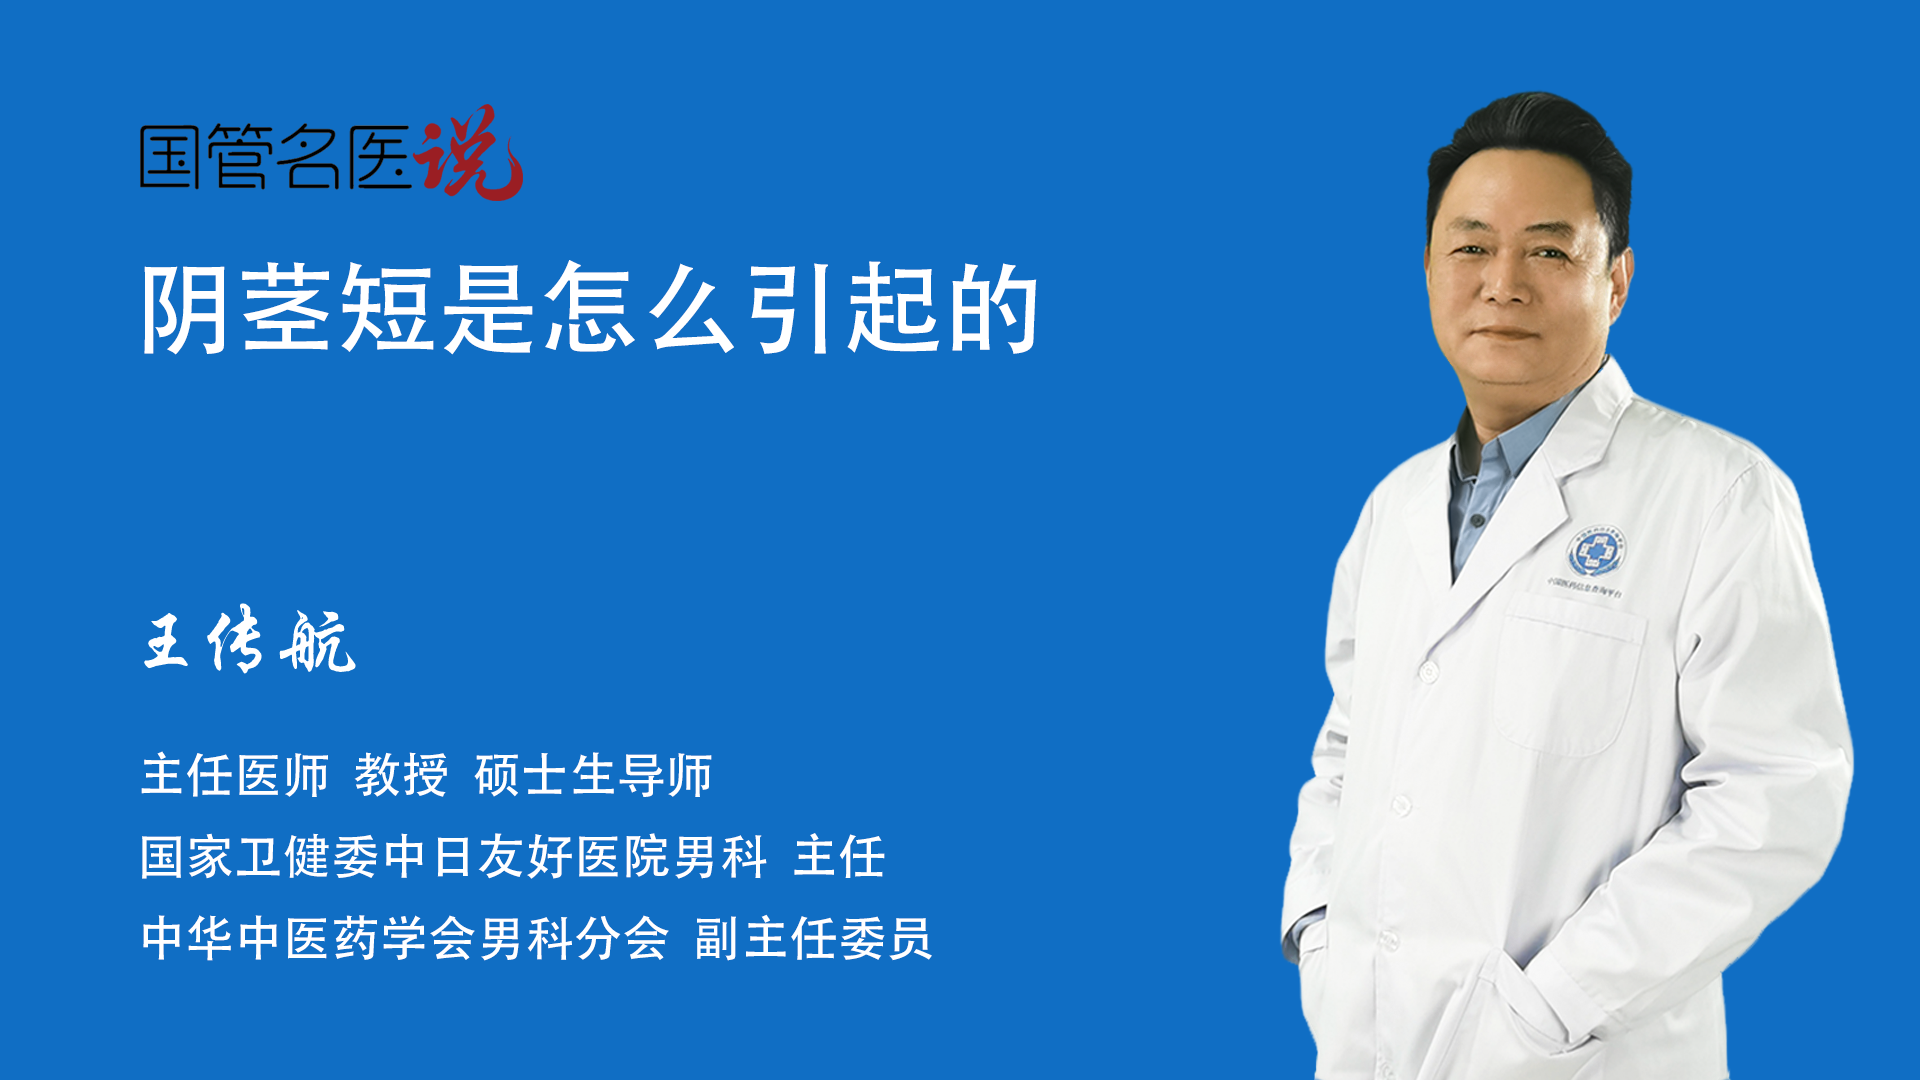 中国男人平均勃起长度-有来医生